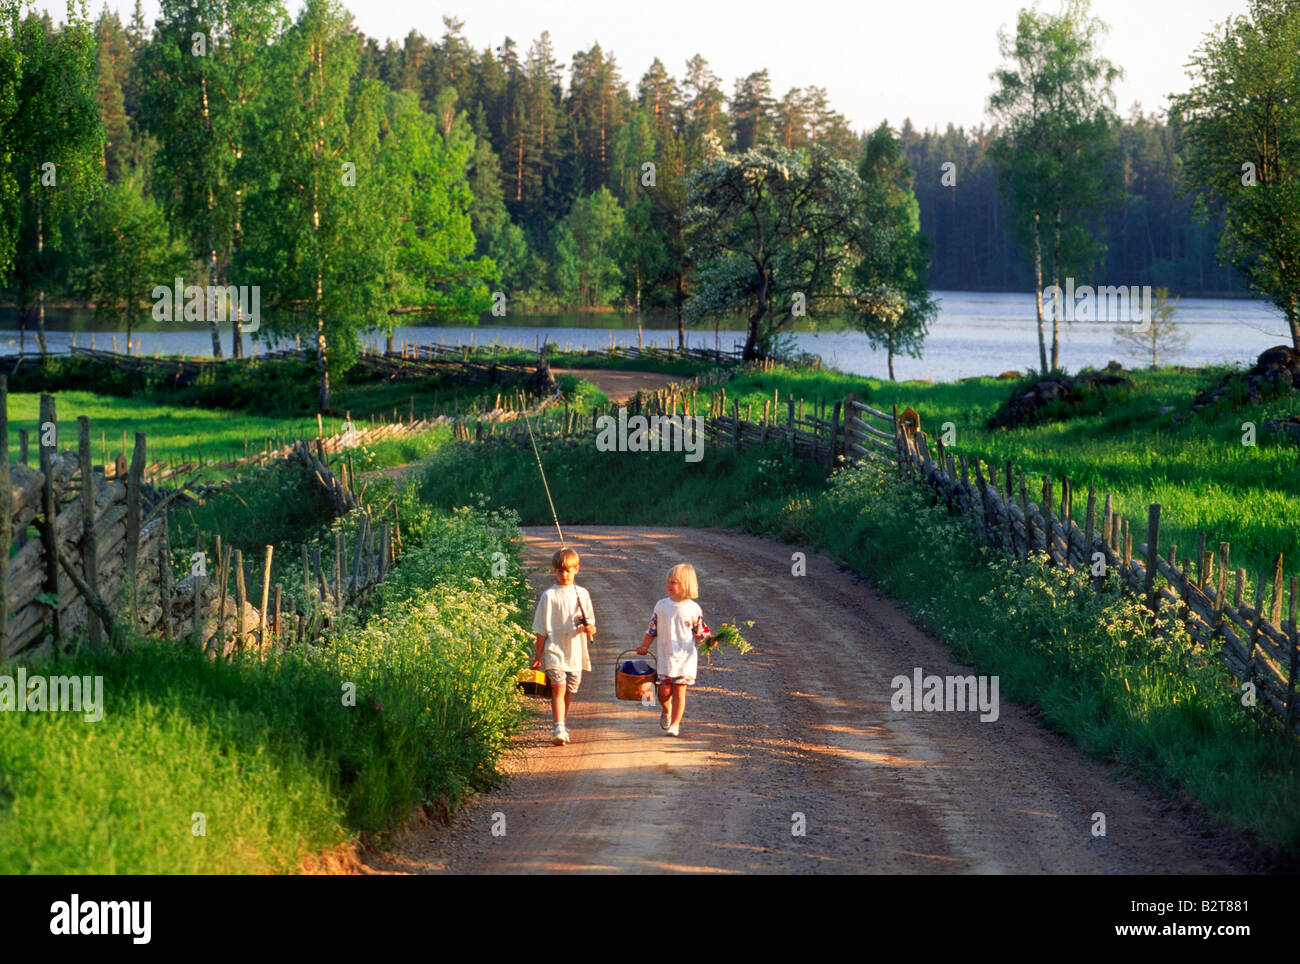 Deux enfants qui vont à la pêche balades pique-nique sur la route de campagne Småland, en Suède Banque D'Images